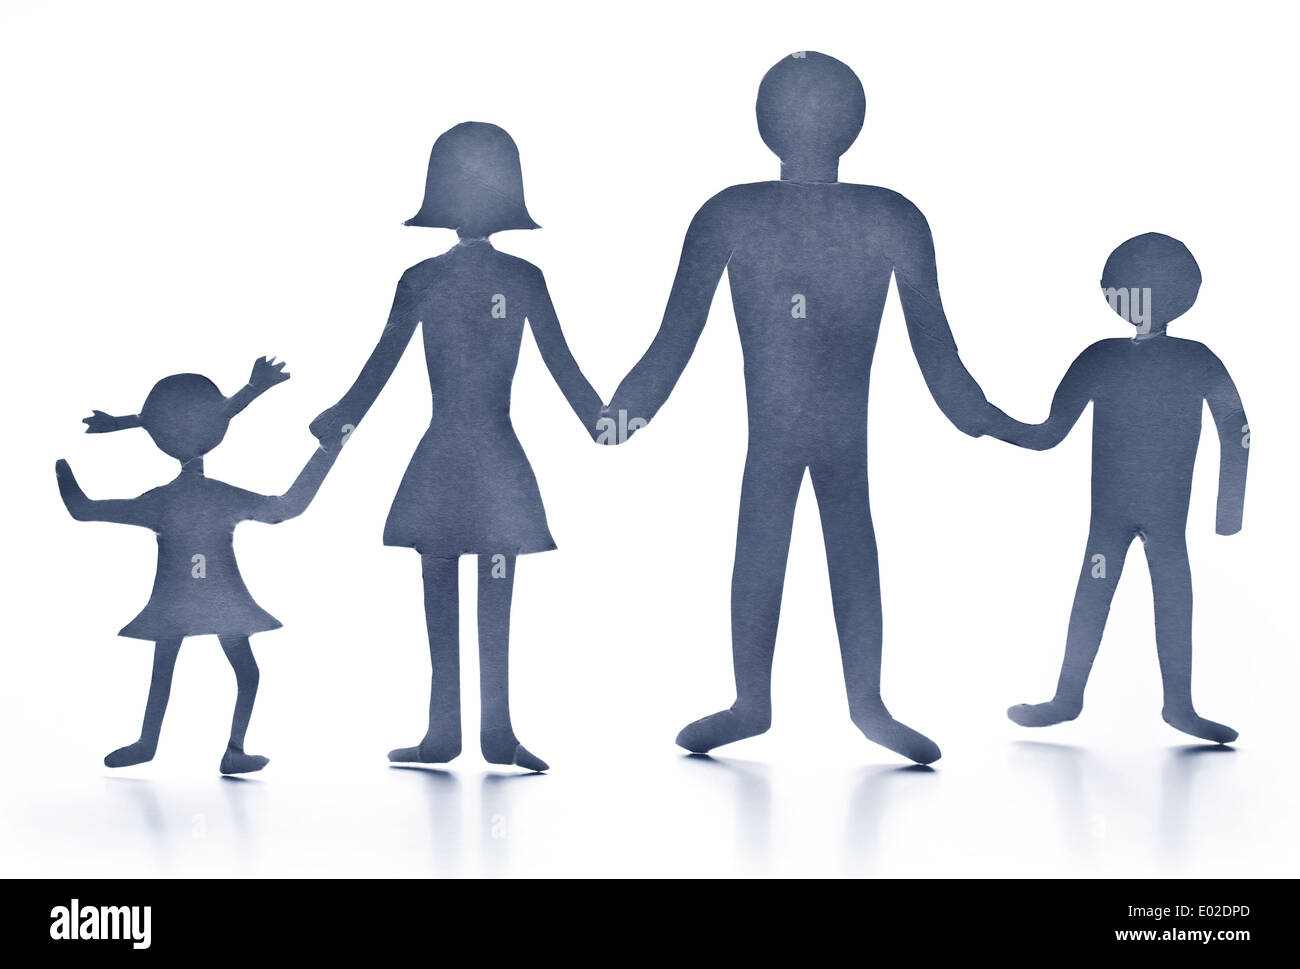 Pappfiguren der Familie auf einem weißen Hintergrund. Das Symbol der Einheit und des Glücks. Stockfoto